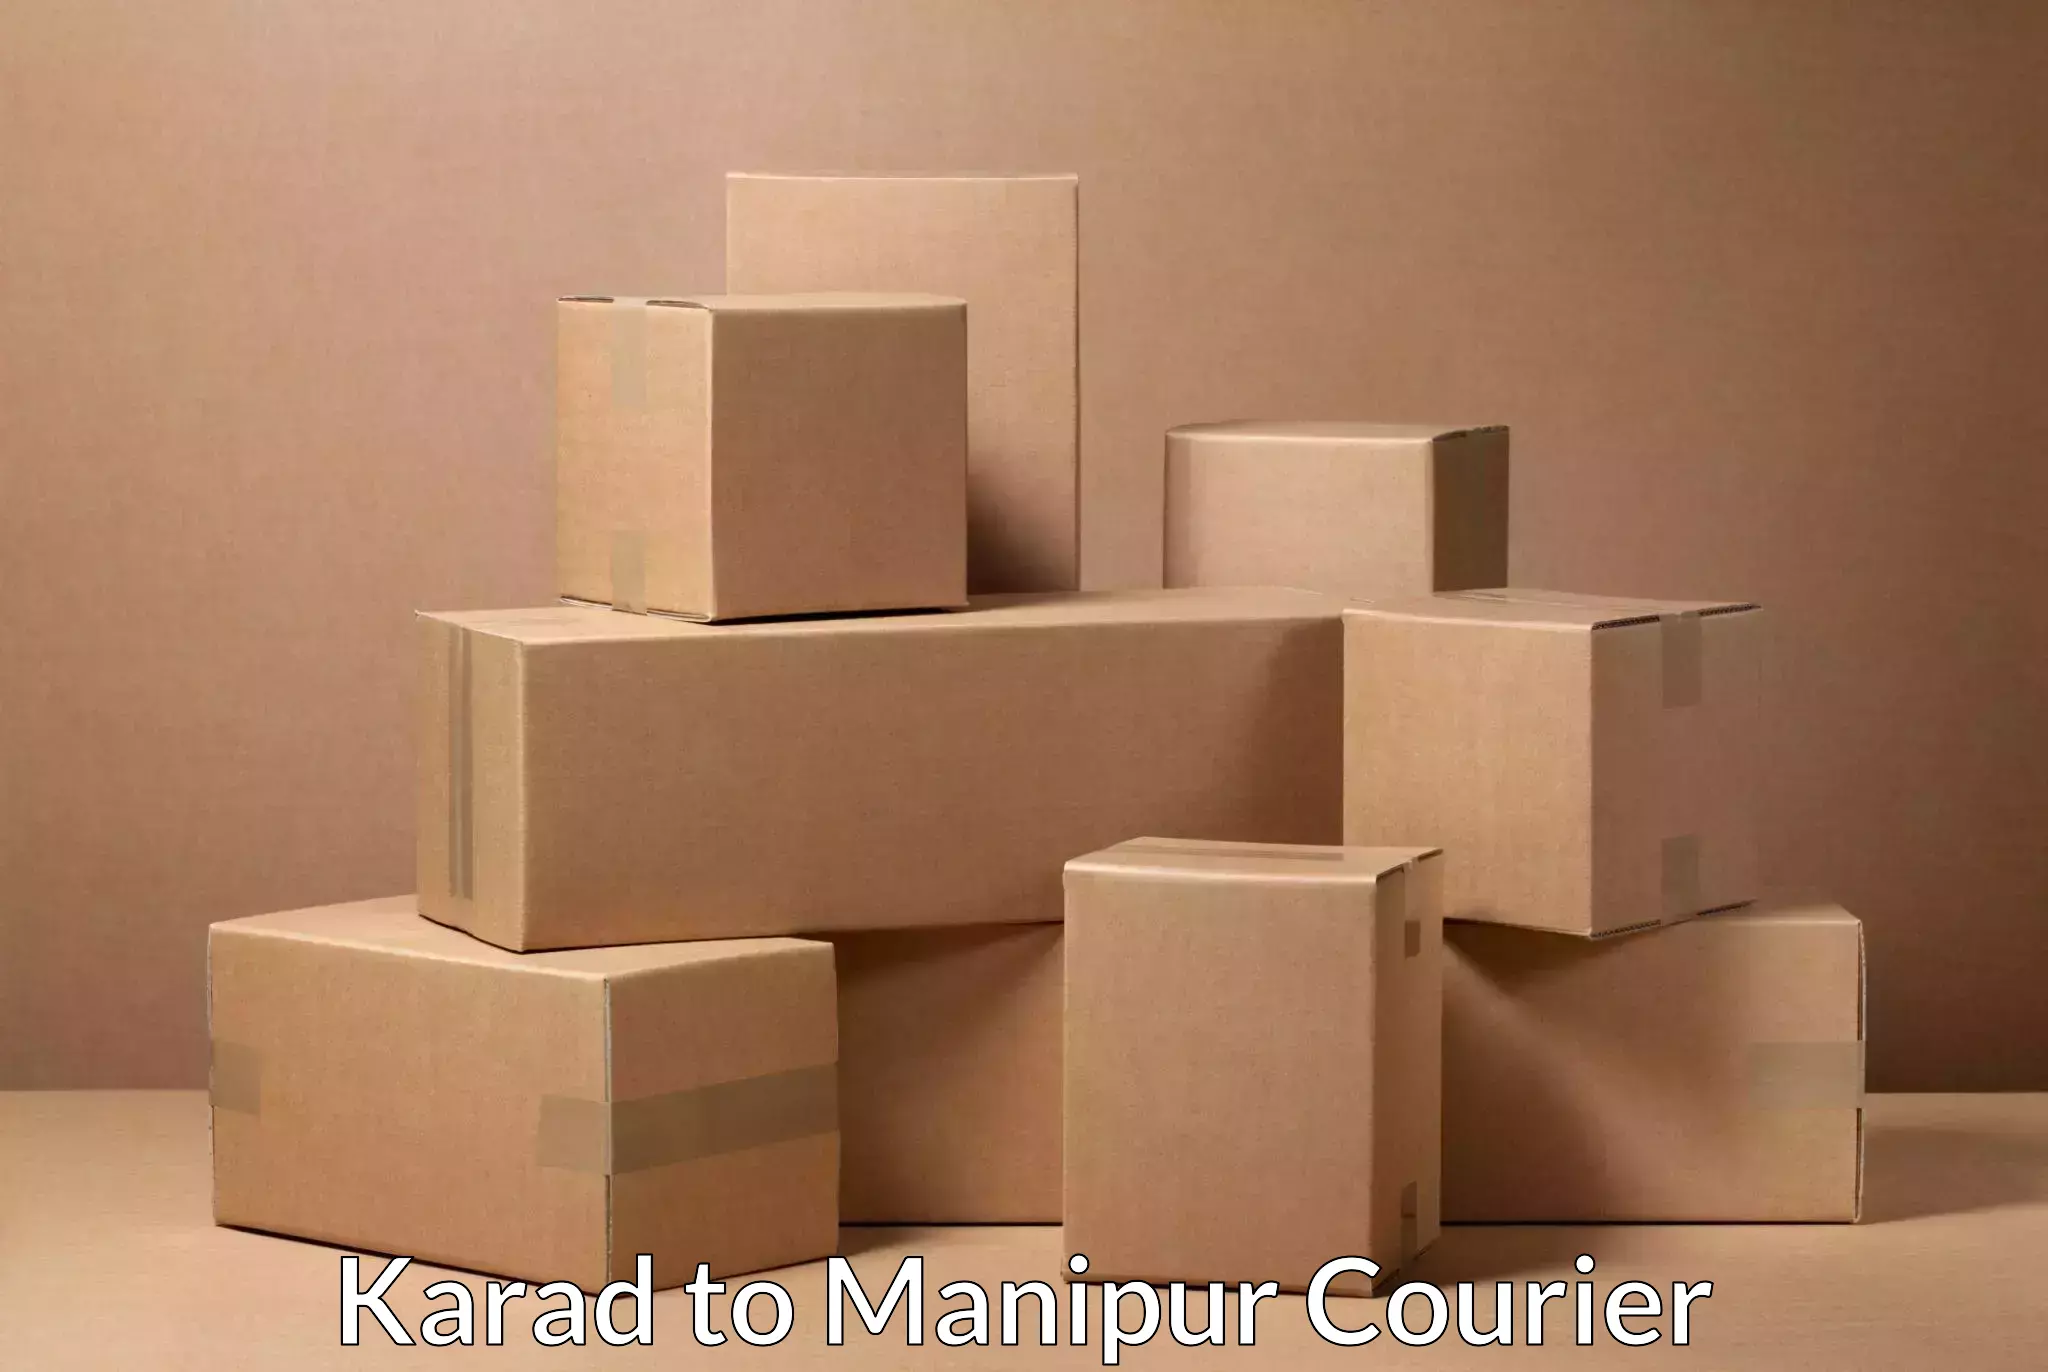 Express mail solutions Karad to Moirang